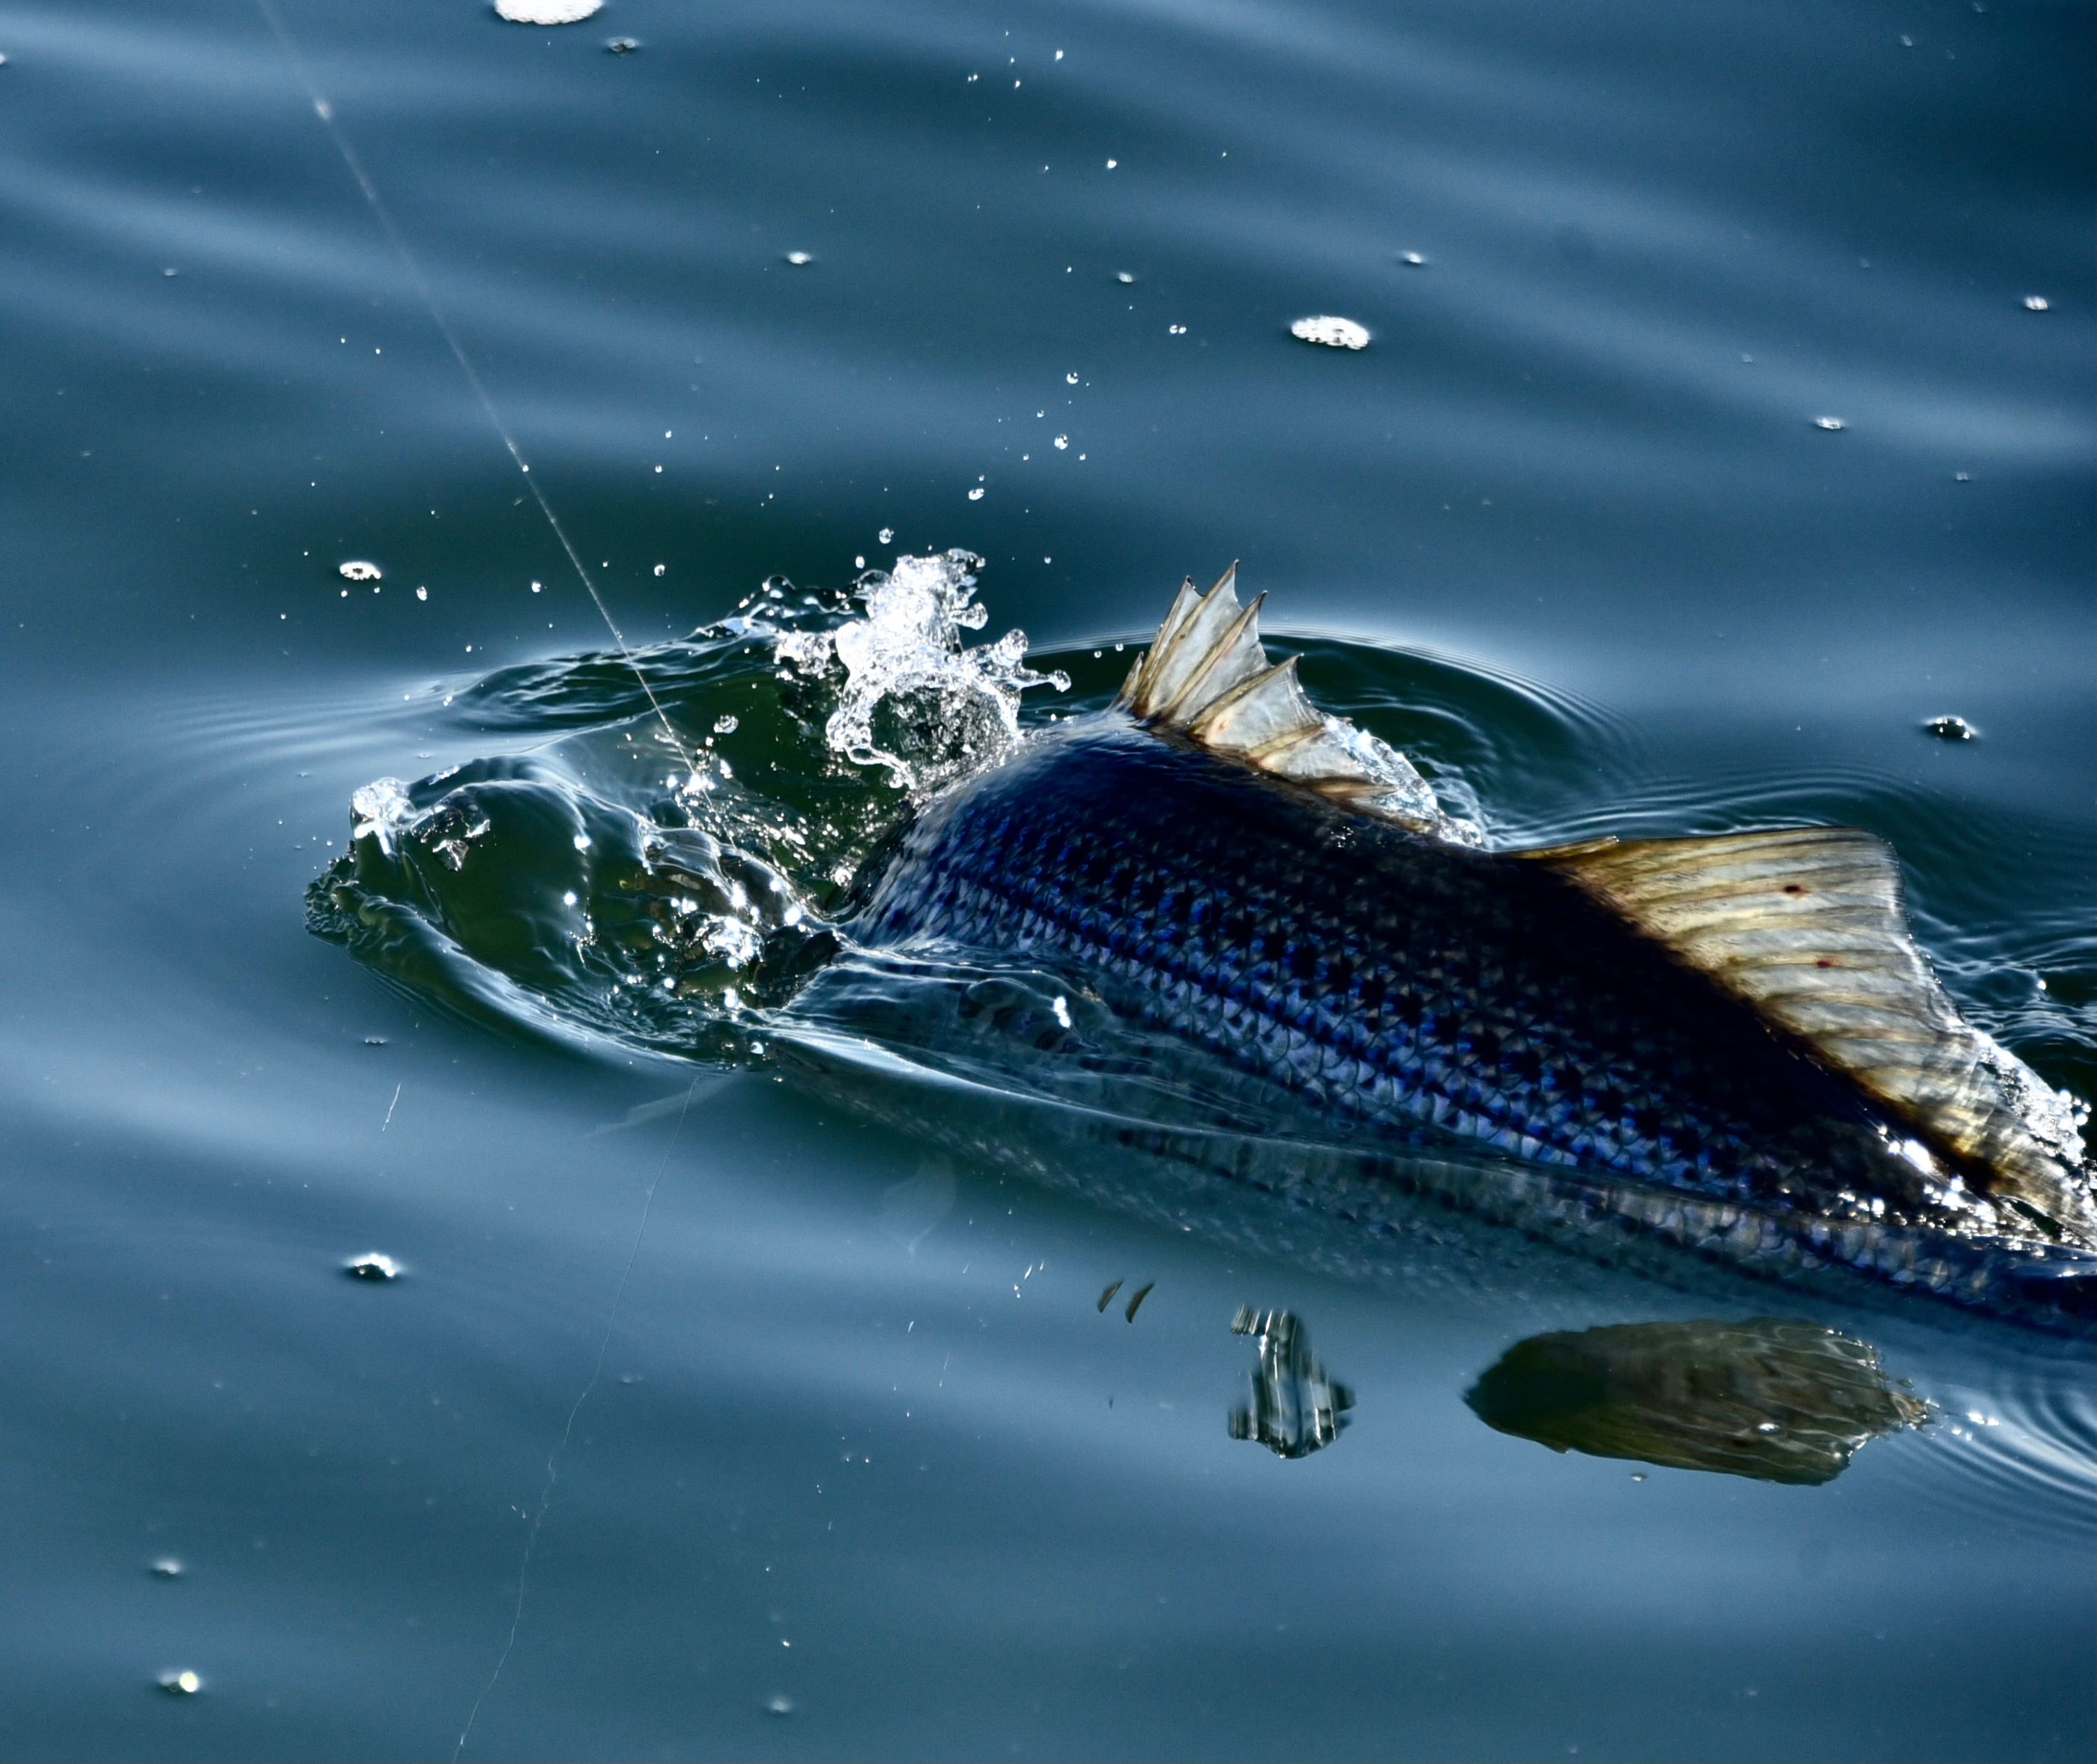 Barsche tauchen zurück ins Wasser, während sie an einer Fliegenfischerschnur gefangen werden